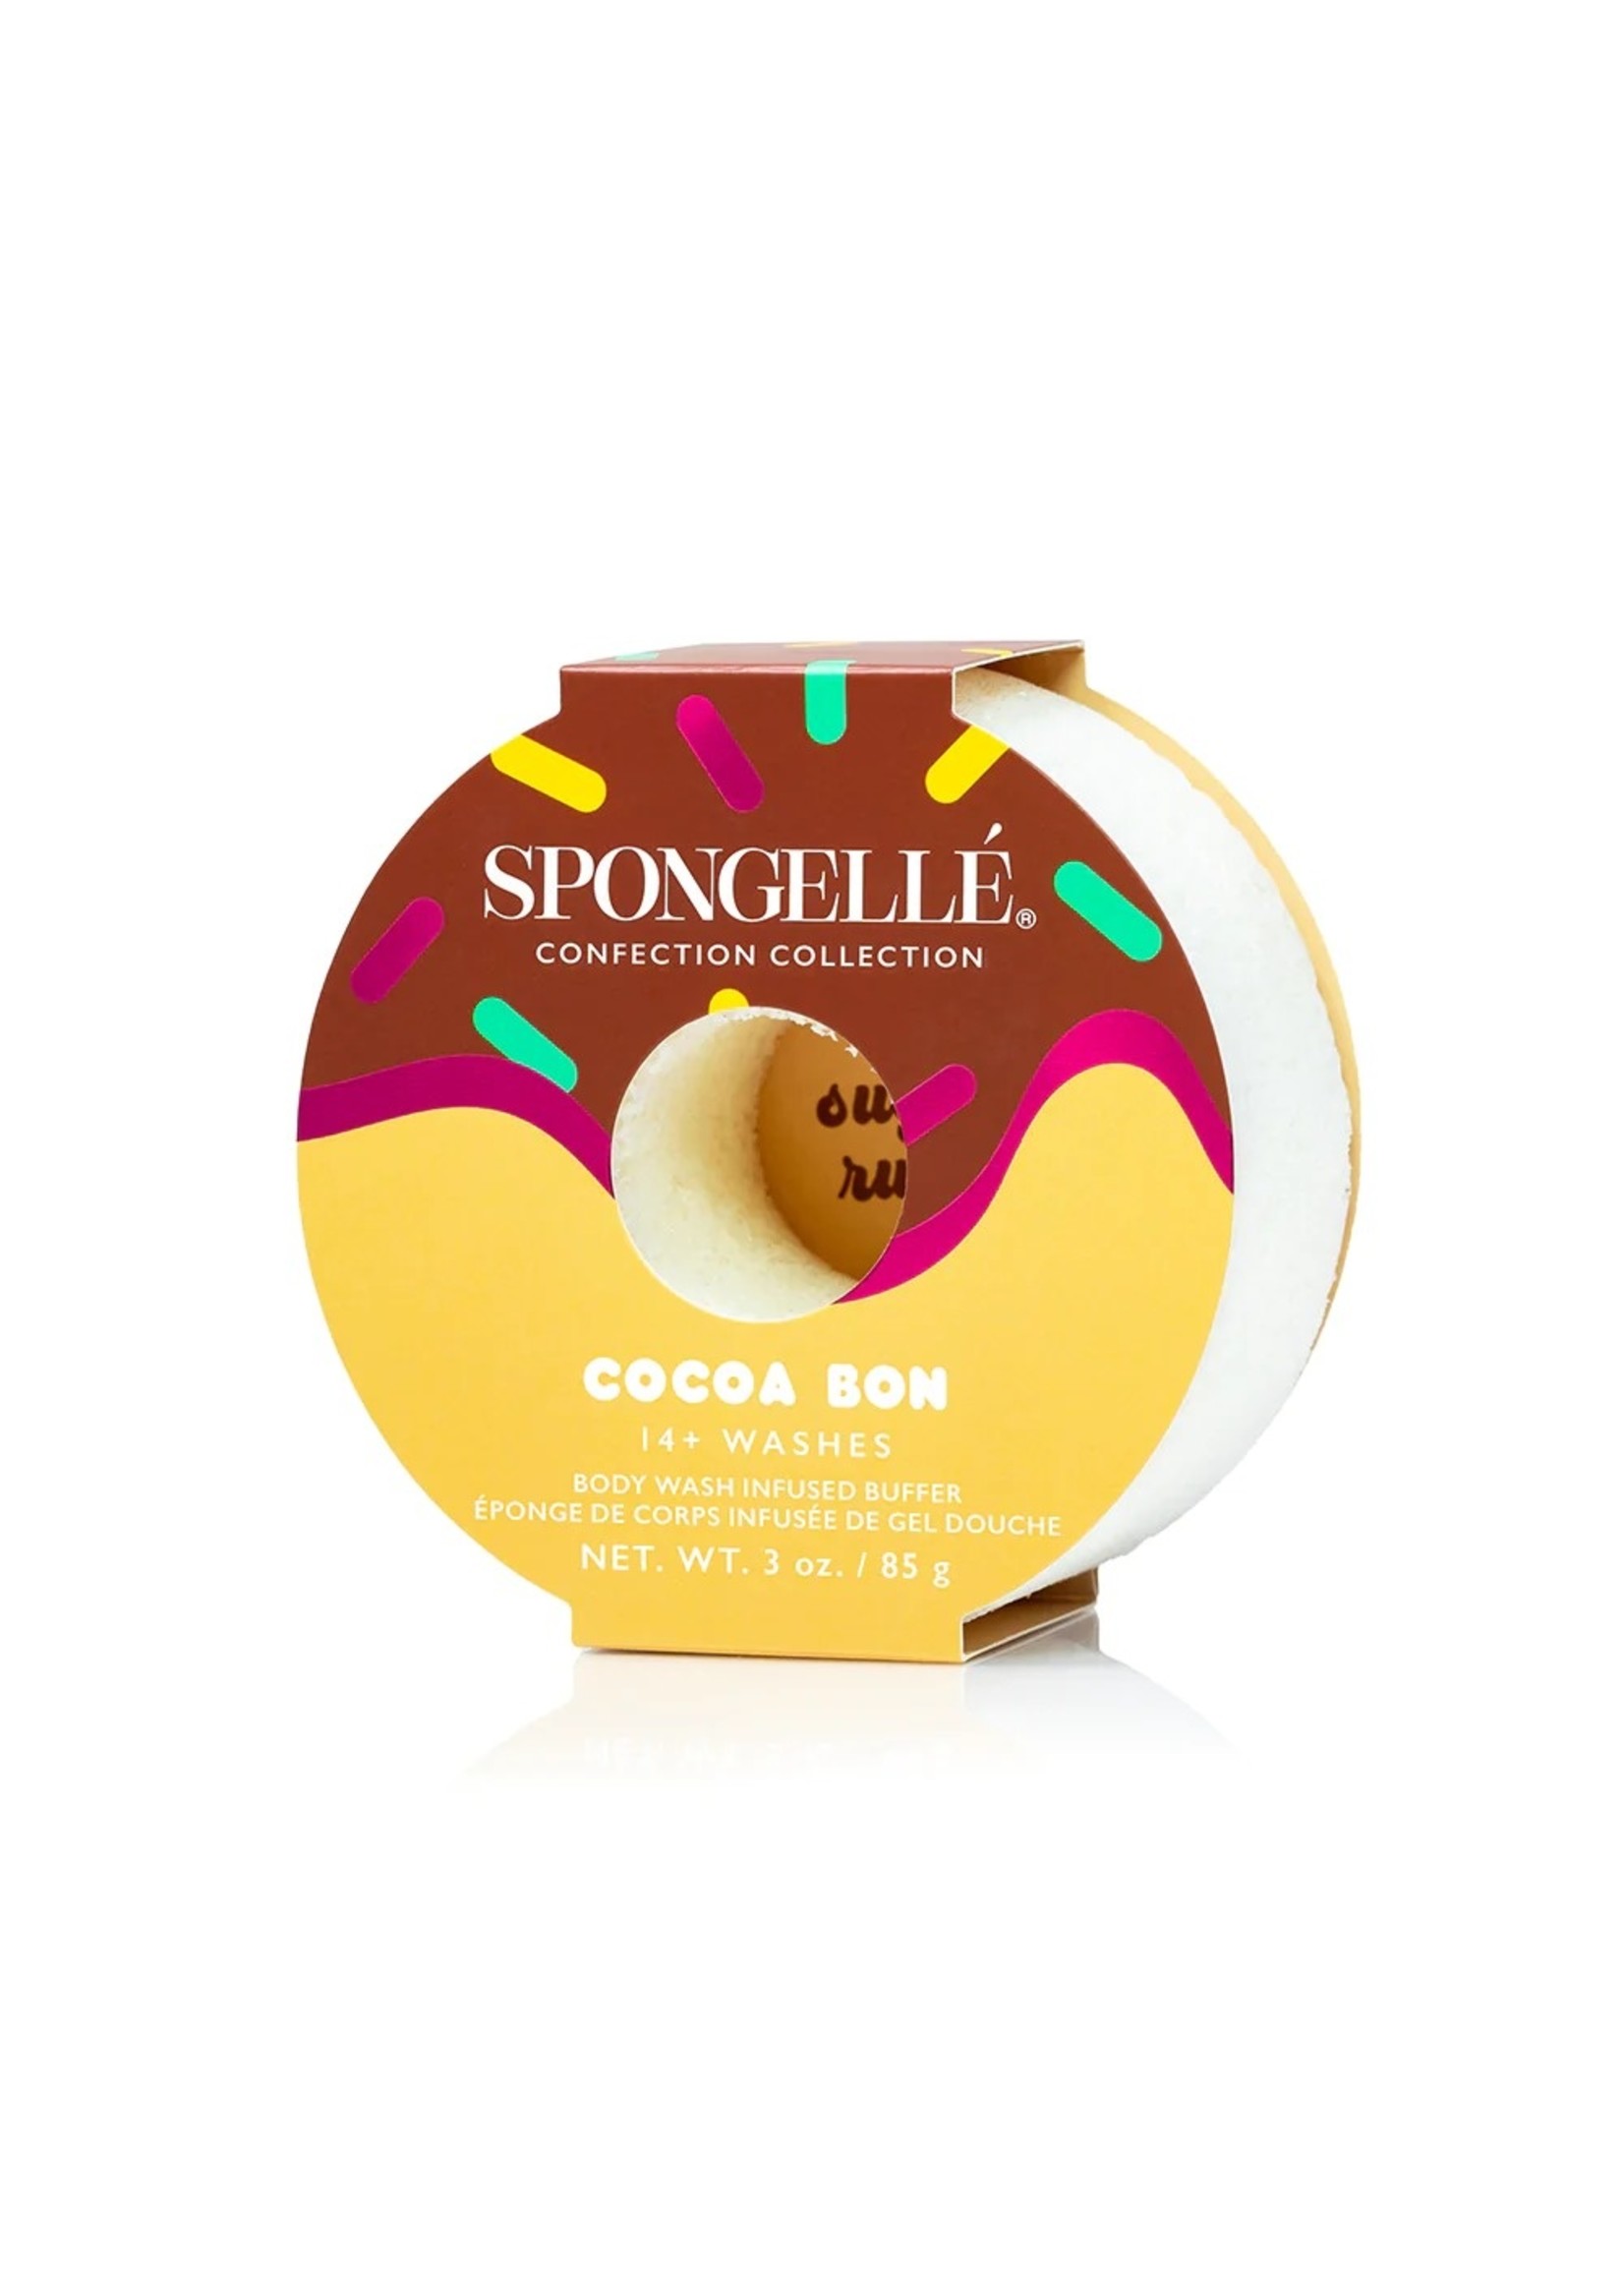 Spongelle Cocoa Bon Infused Body Buffer